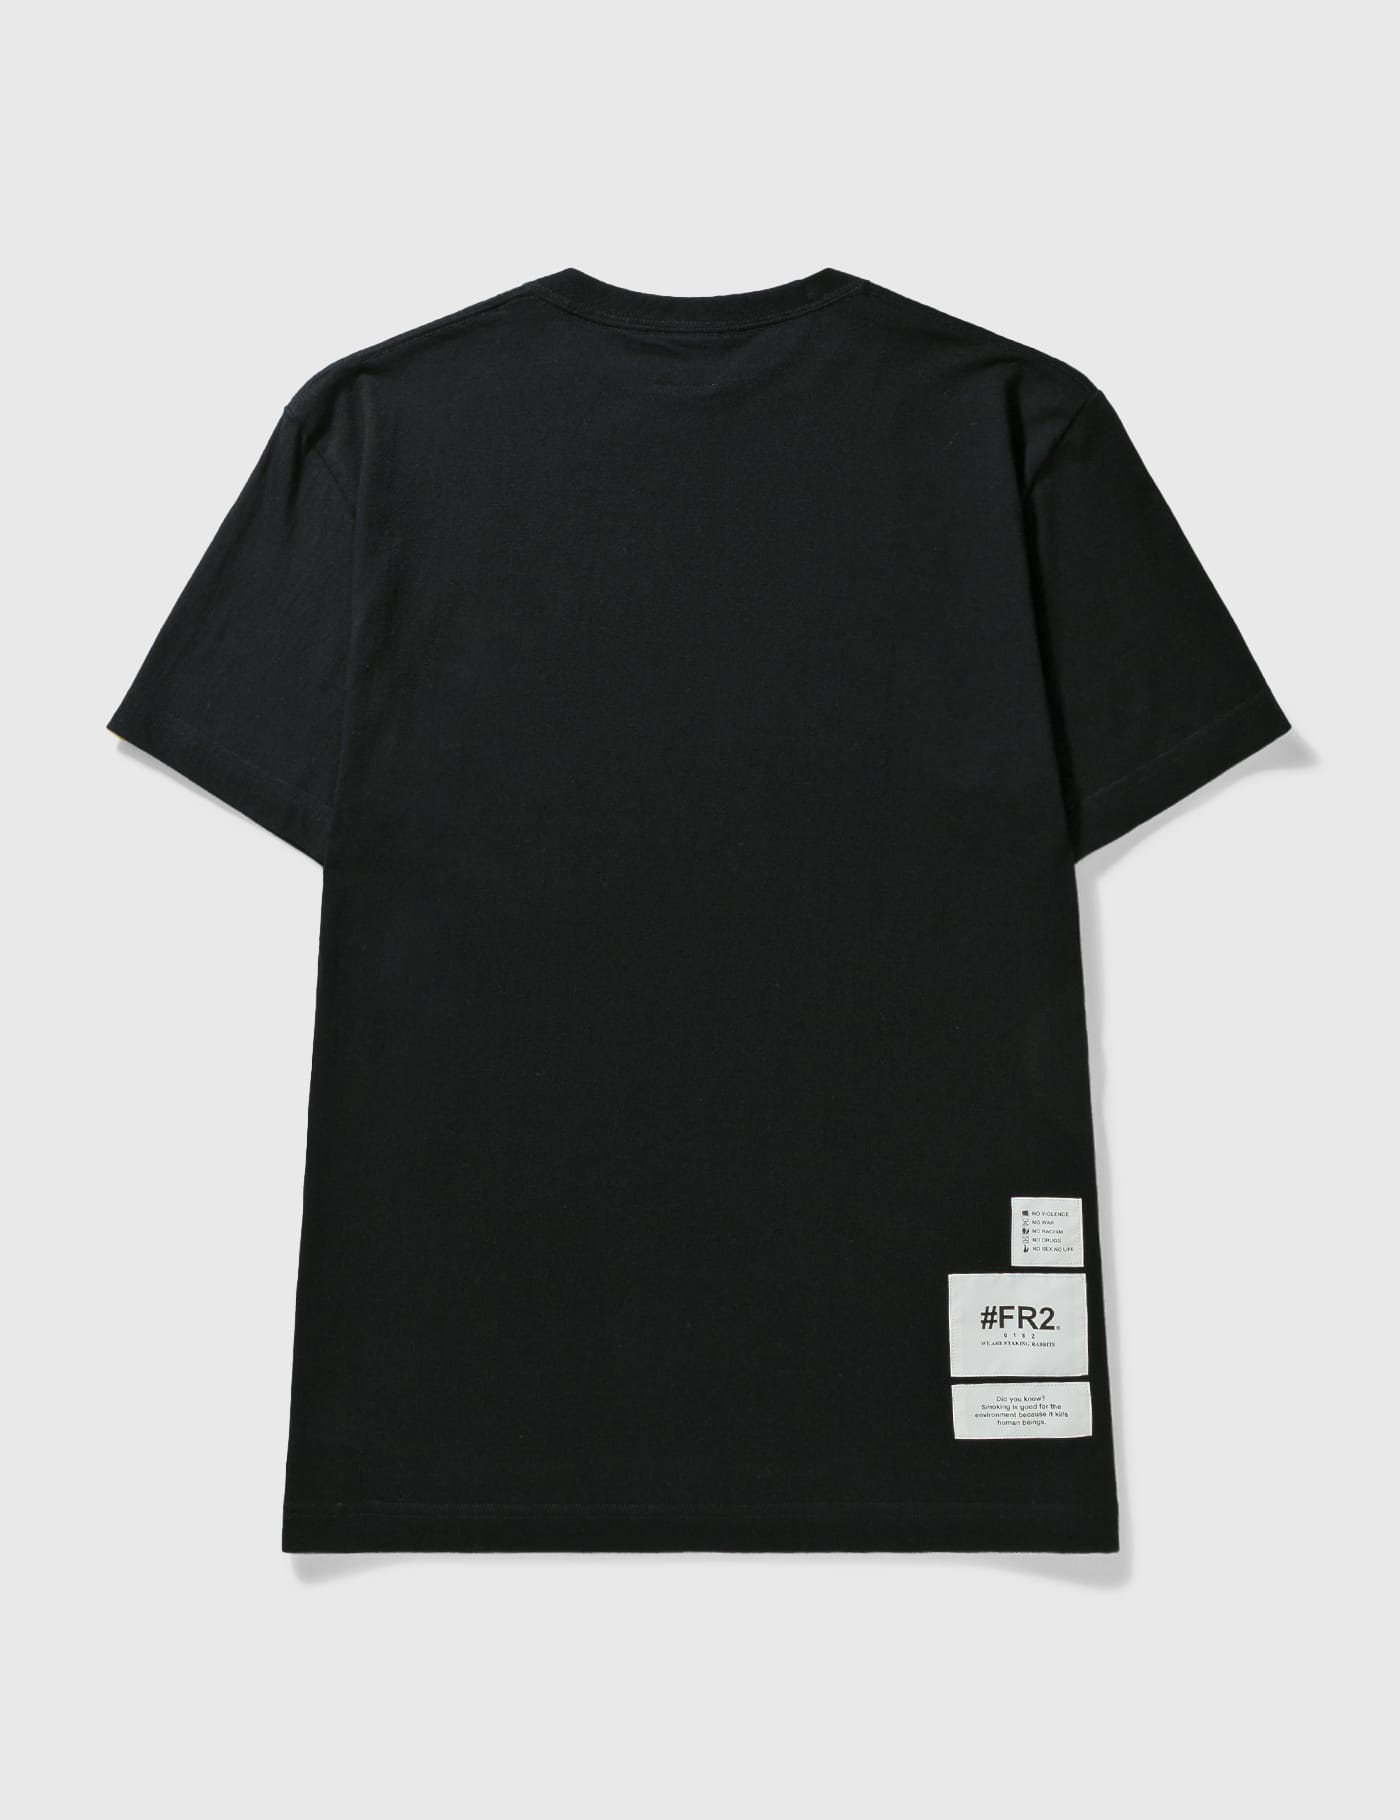 FR2 - Smoking Kills Box Logo T-shirt | HBX - ハイプビースト 